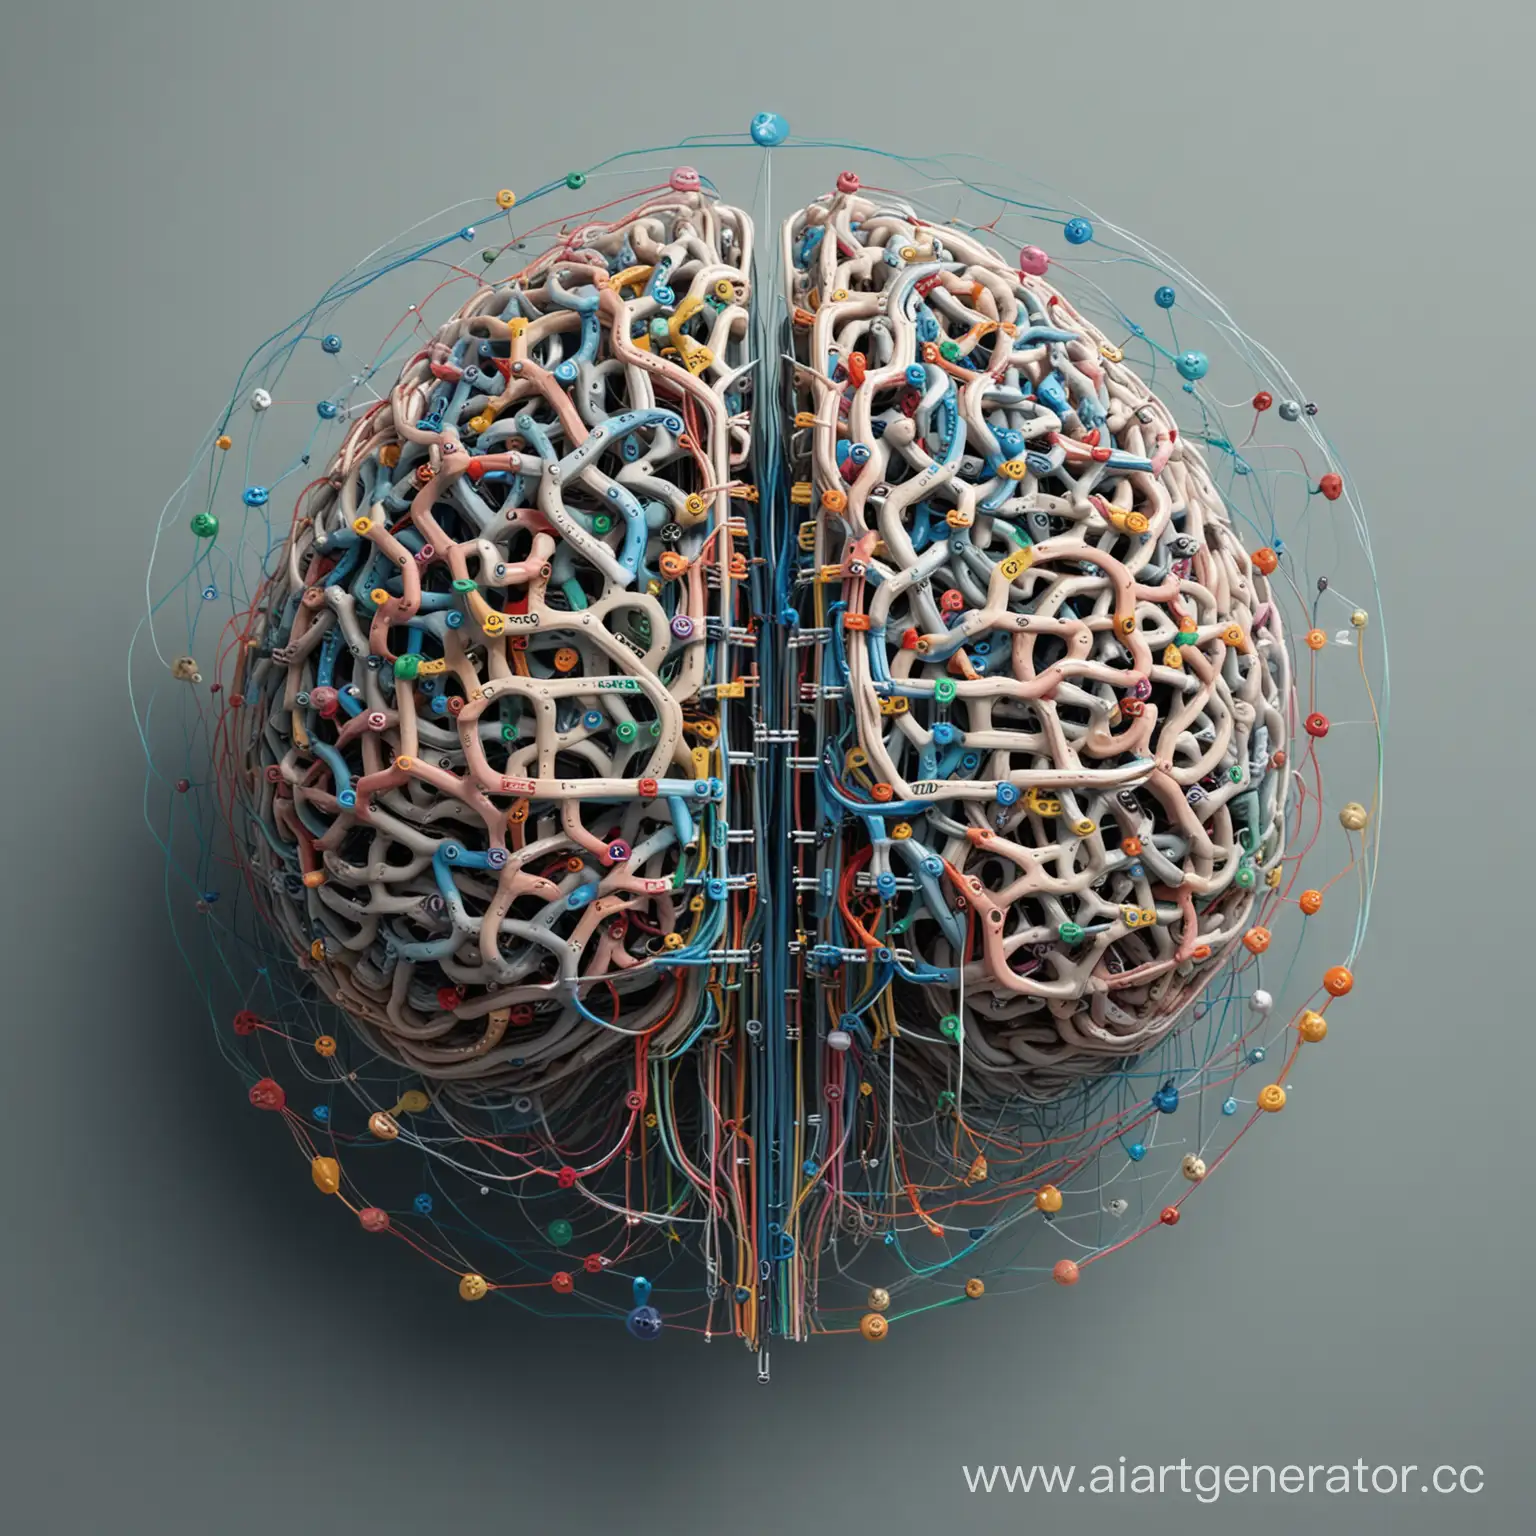 Мозг, который представляет собой нейронные сети, соединенные между собой. Мозг красиво переплетается с цифрами и буквами, символизируя анализ данных и обучение модели. Вокруг магниты, представляющие привлекательность и эффективность машинного обучения в работе с данными.